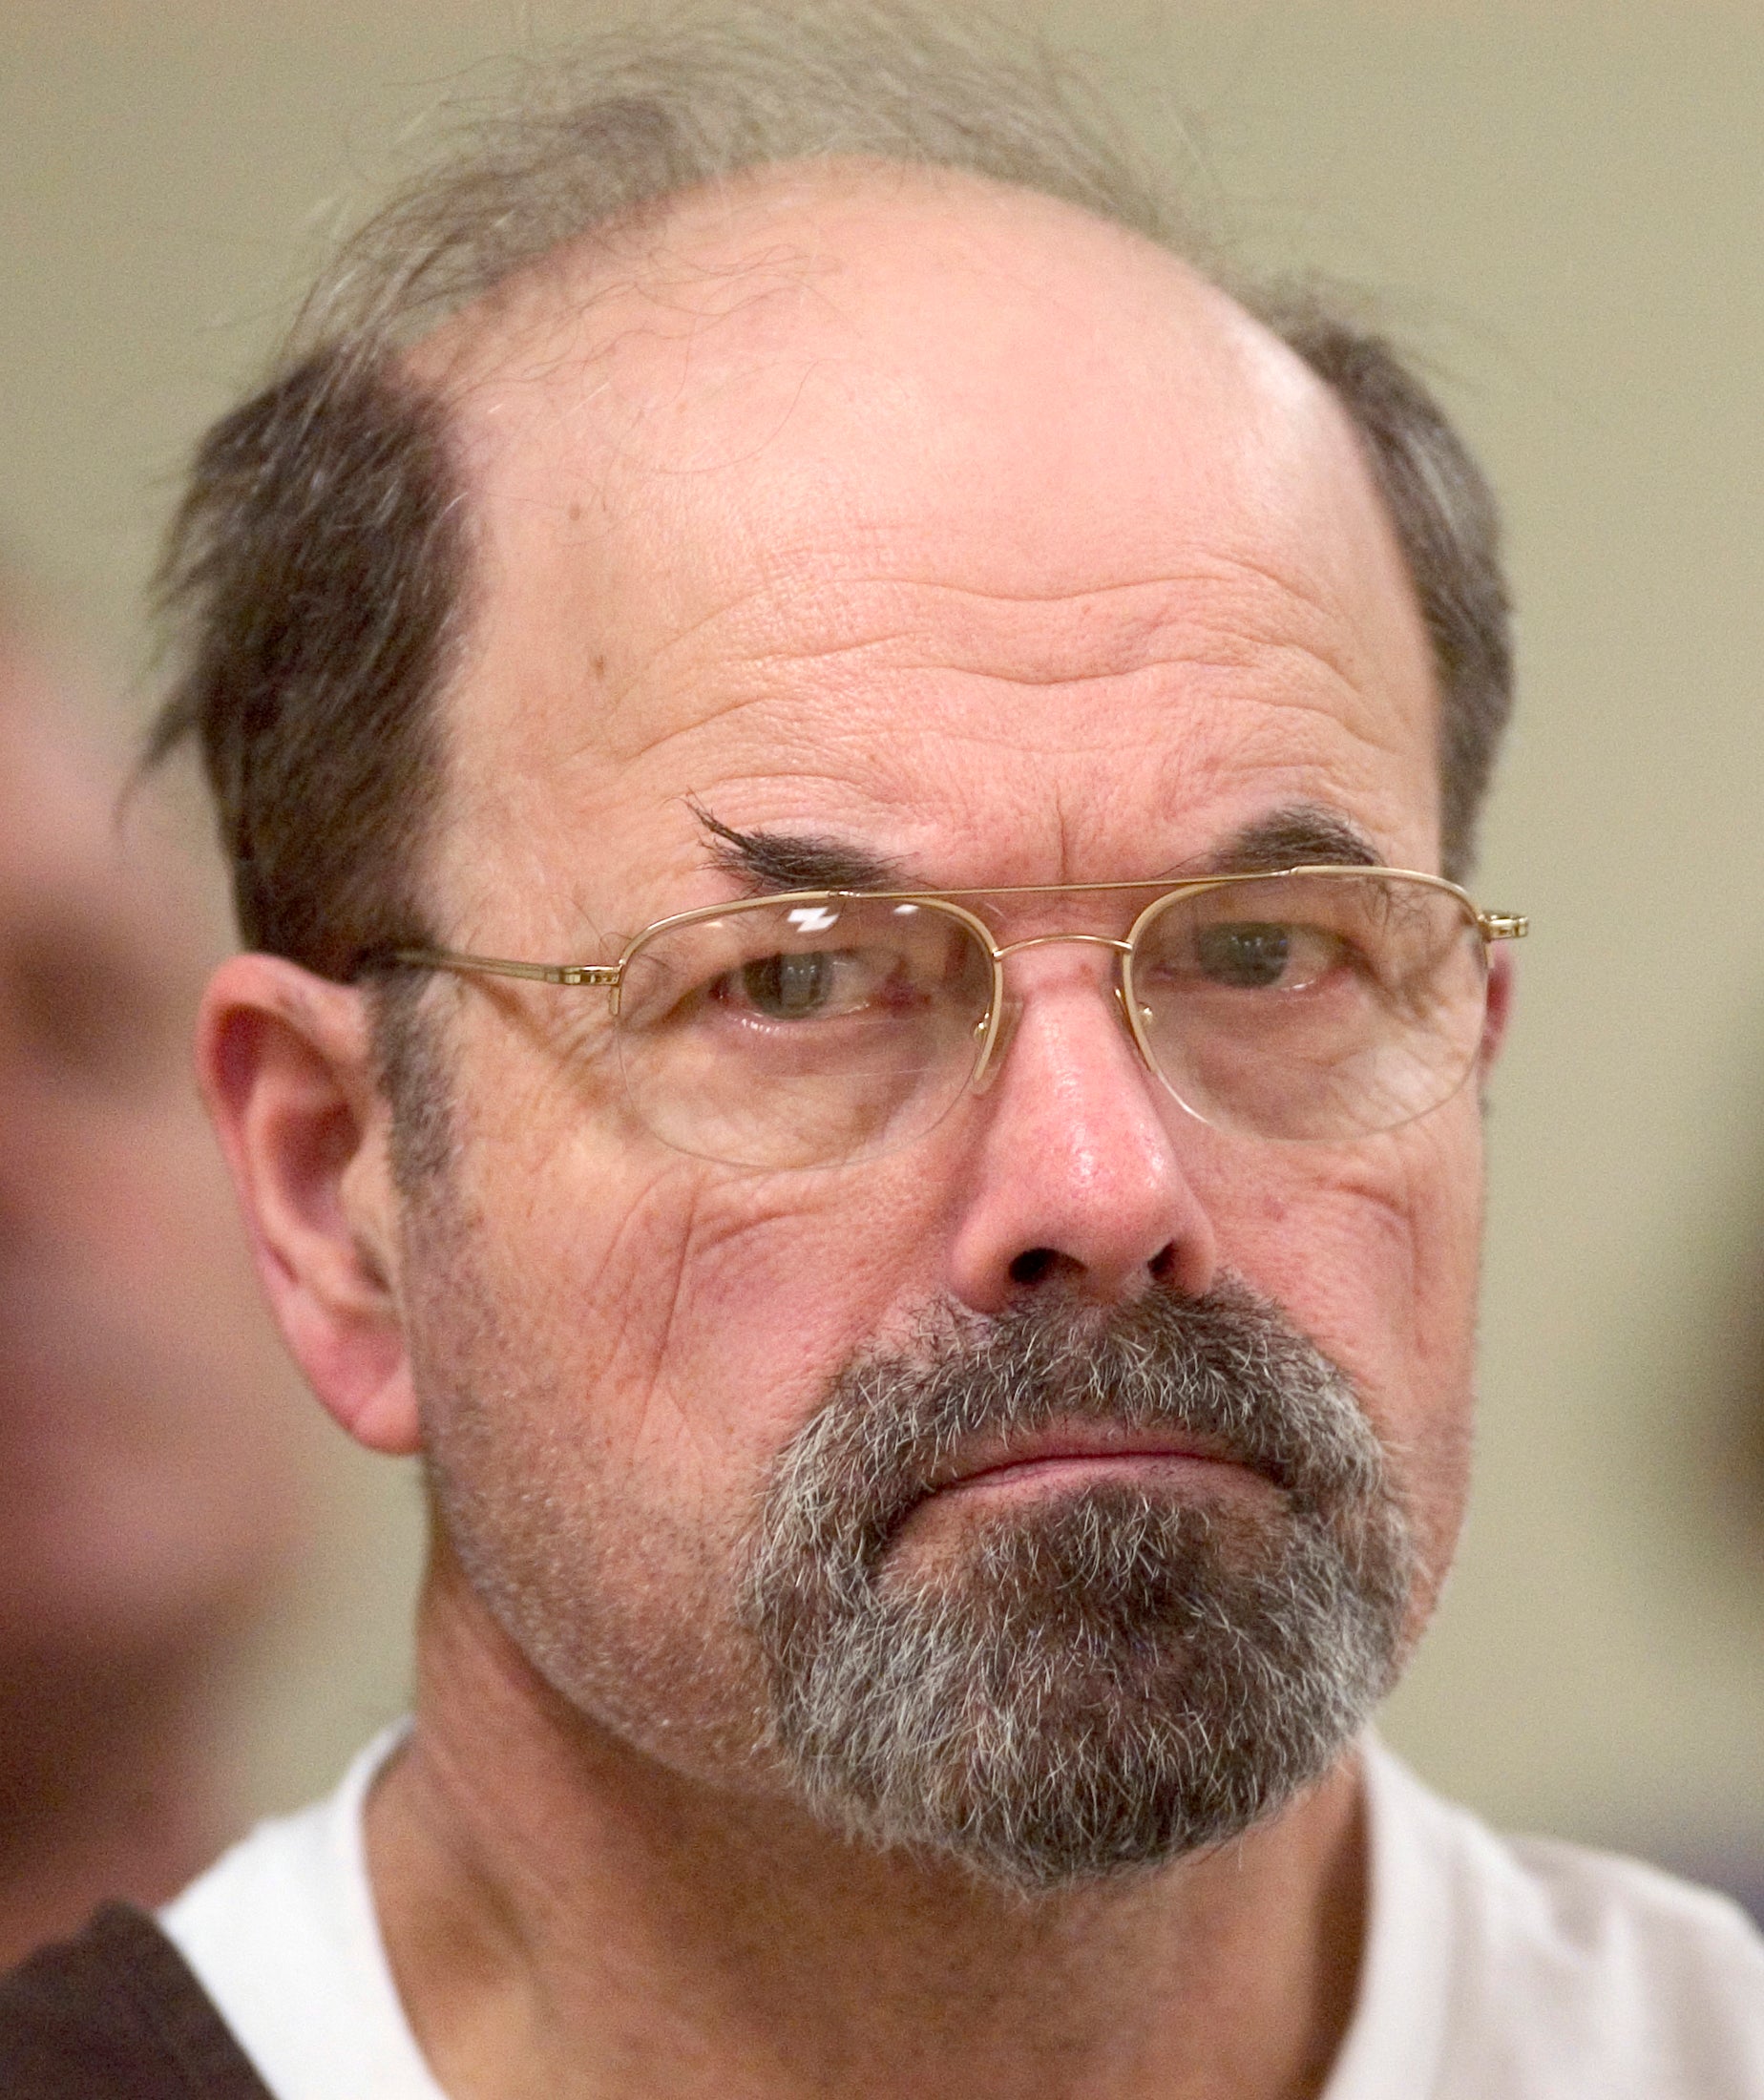 Convicted BTK killer Dennis Rader listens during a court proceeding in October 2005.